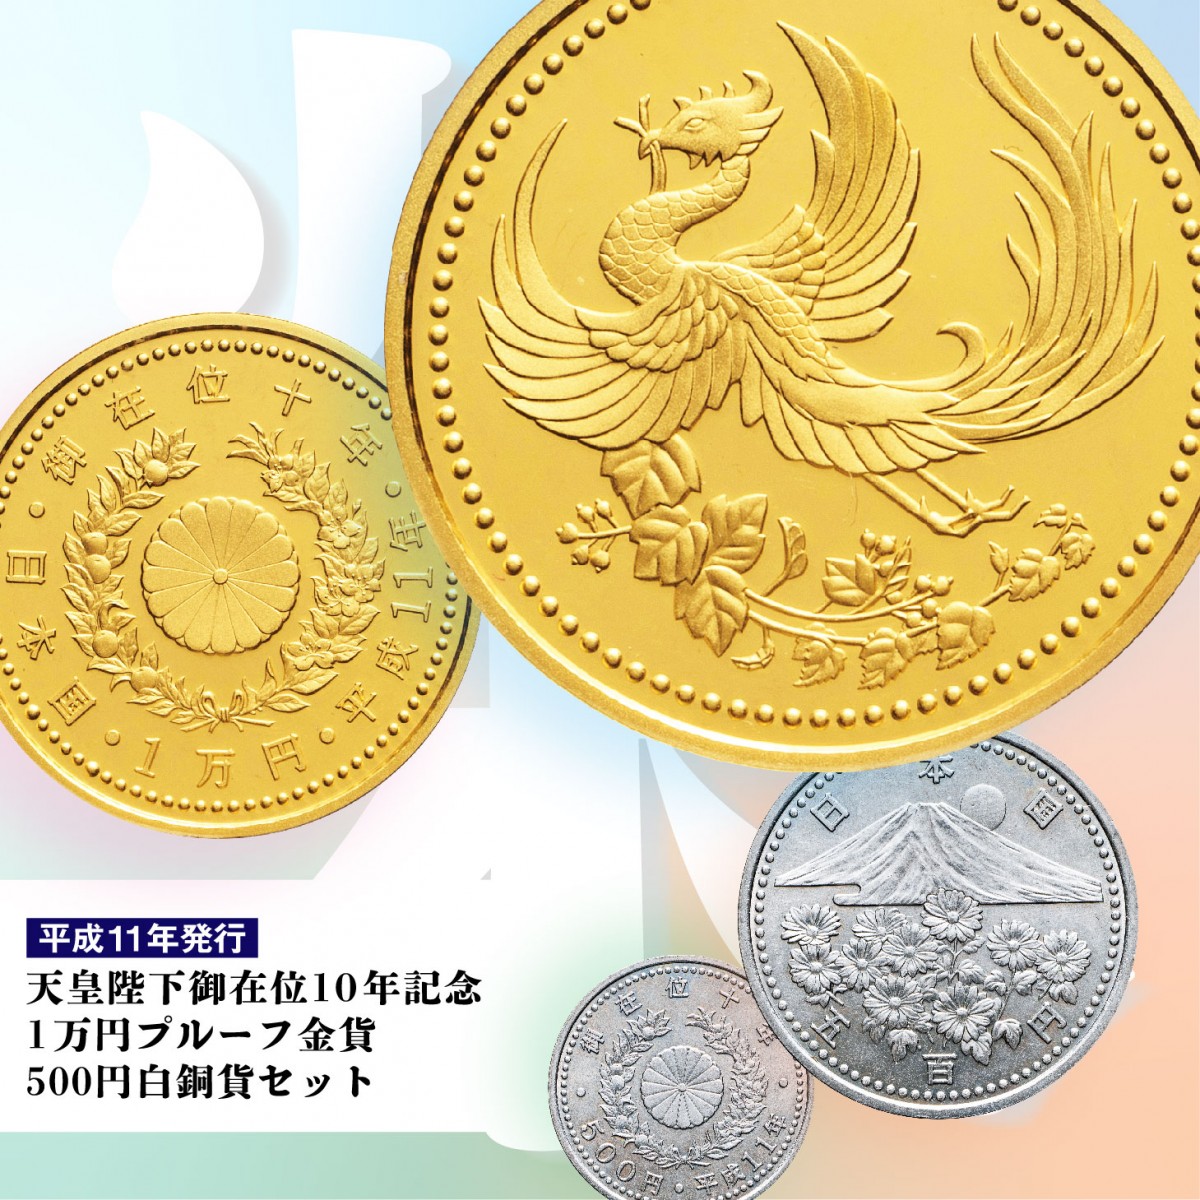 天皇陛下御在位十年記念　1万円金貨・500円プルーフ貨幣セット